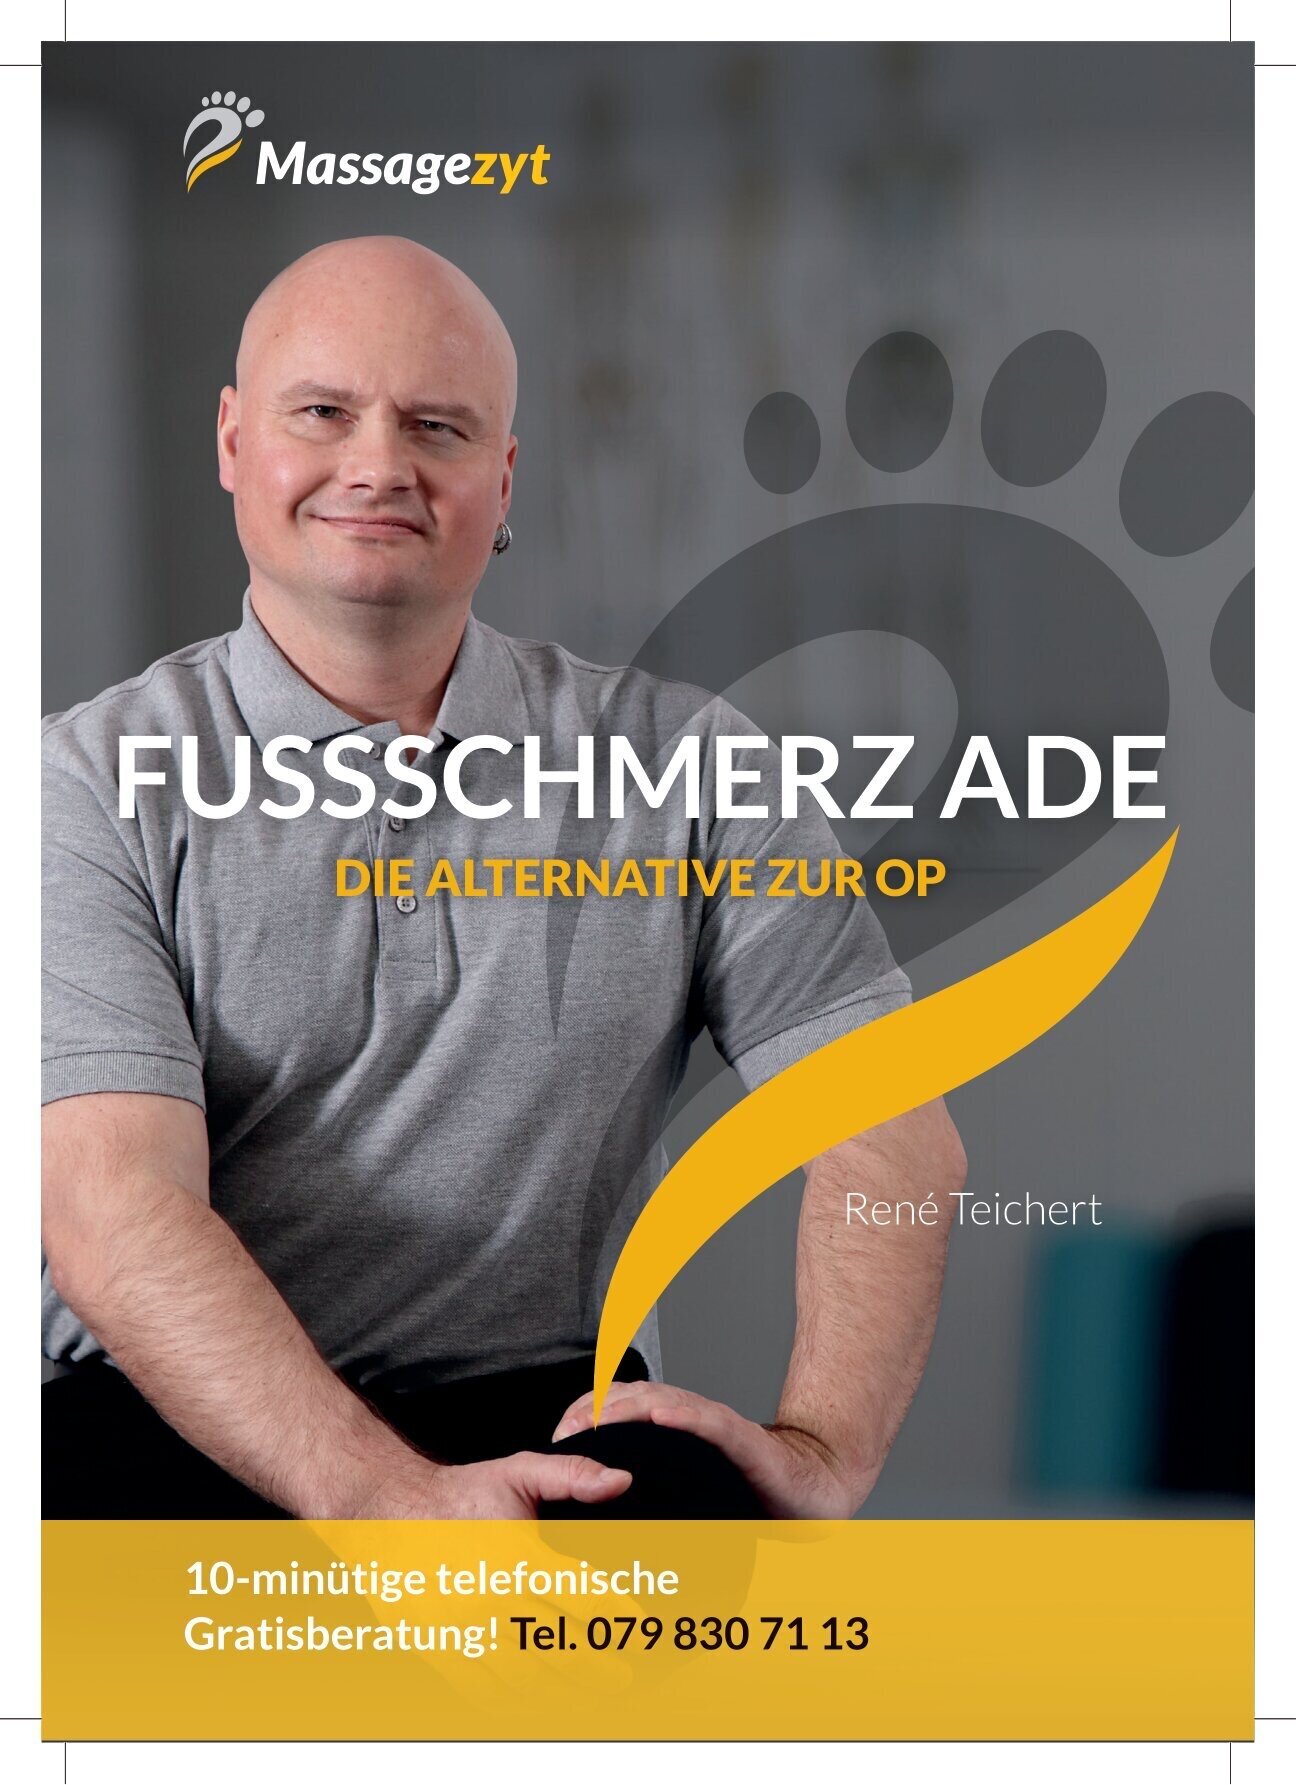 Fussschmerz-Teichert Bern 079 830 71 13